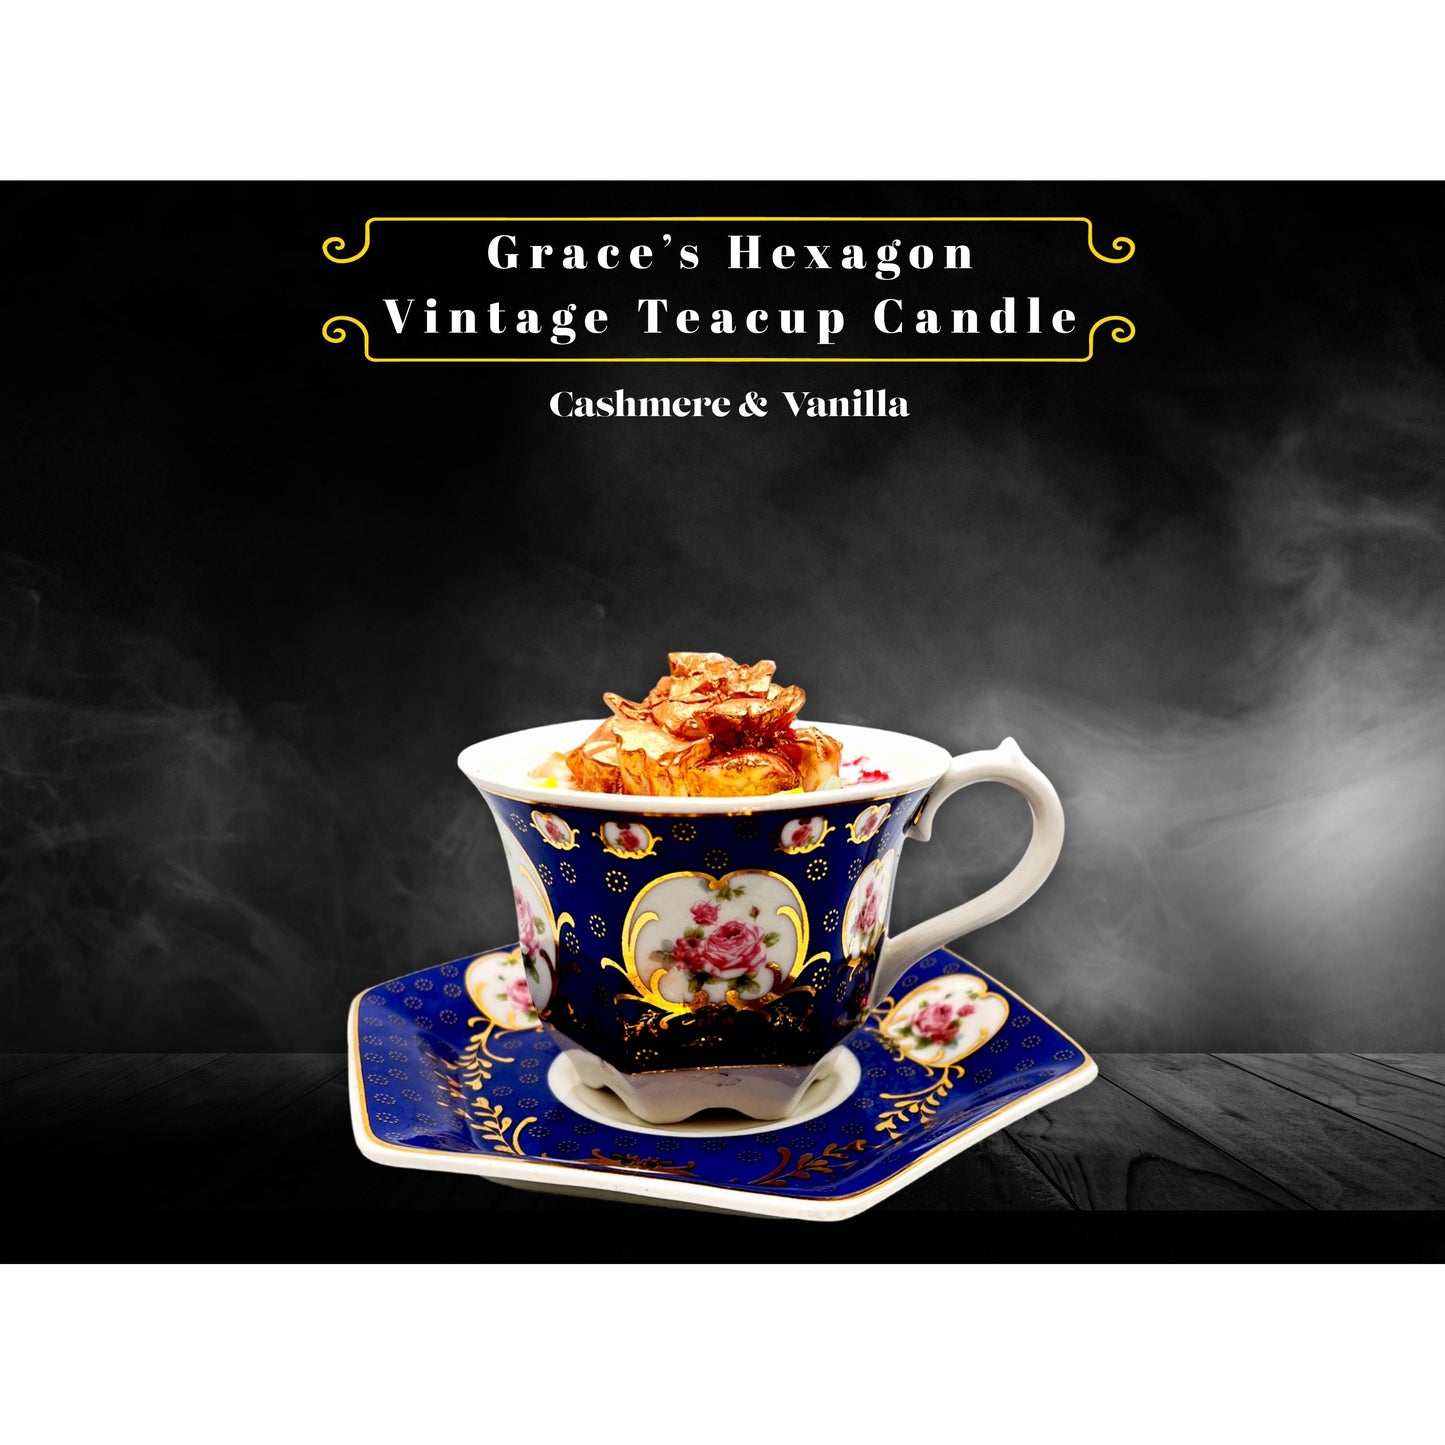 Grace’s Hexagon Vintage Teacup Candle